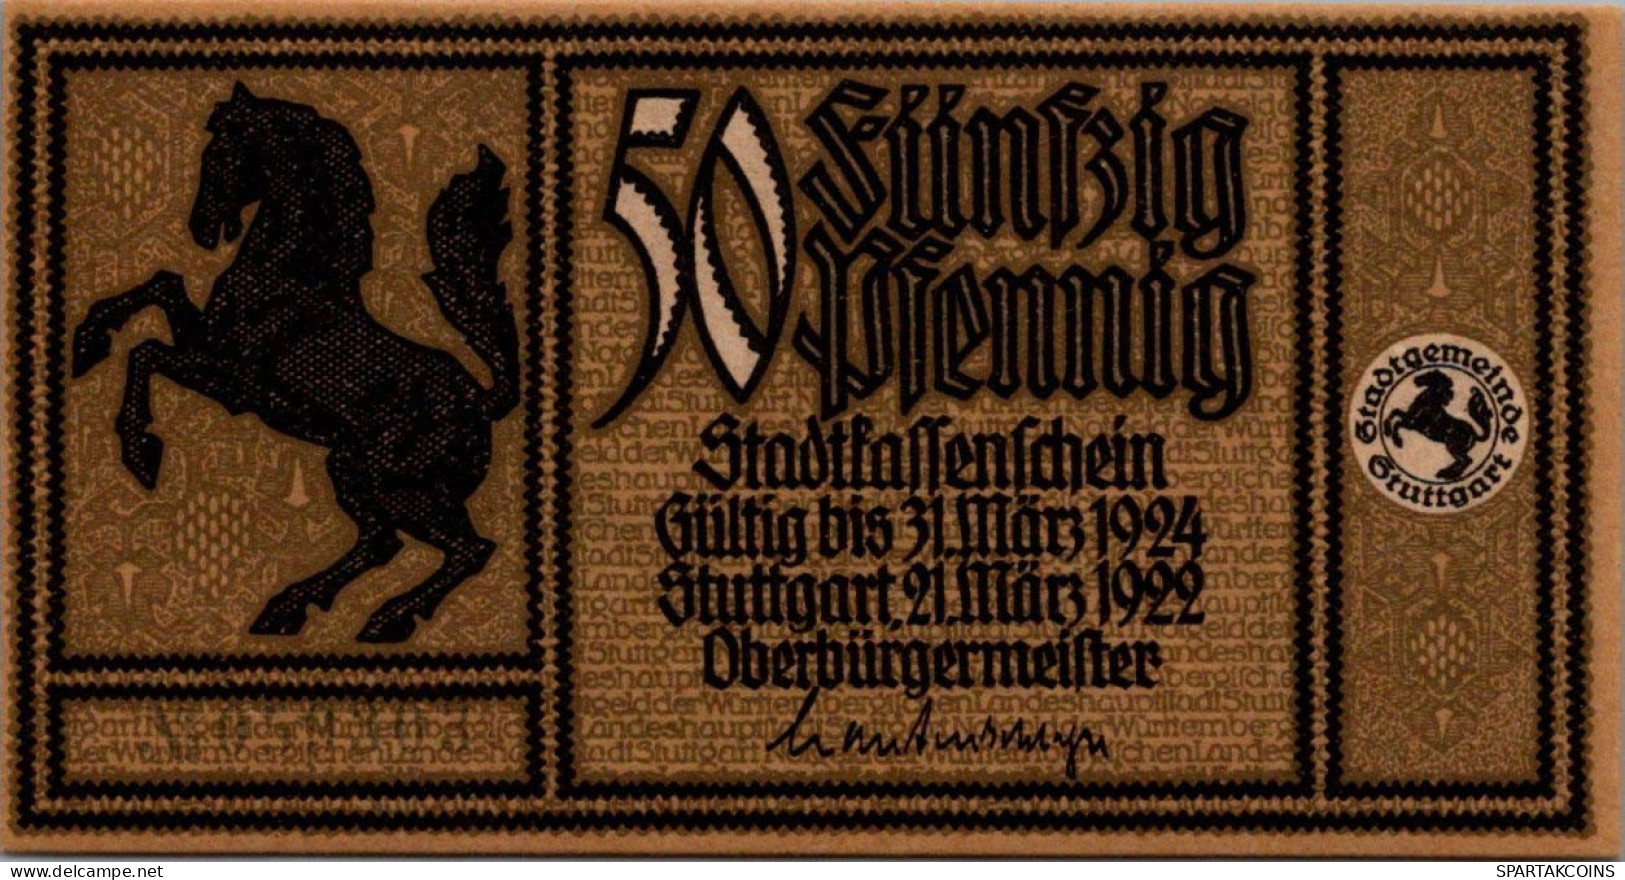 50 PFENNIG 1922 Stadt STUTTGART Württemberg UNC DEUTSCHLAND Notgeld #PC405 - [11] Local Banknote Issues